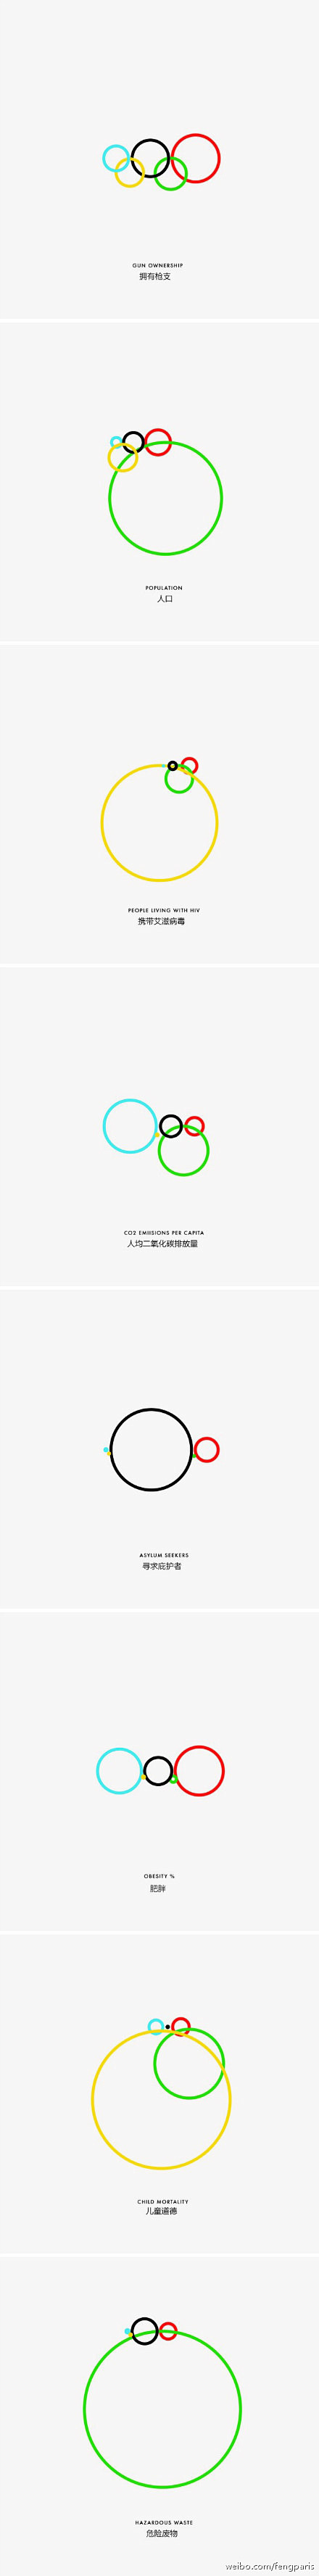 一设计师用奥运五环来表达信息，很有意思，...